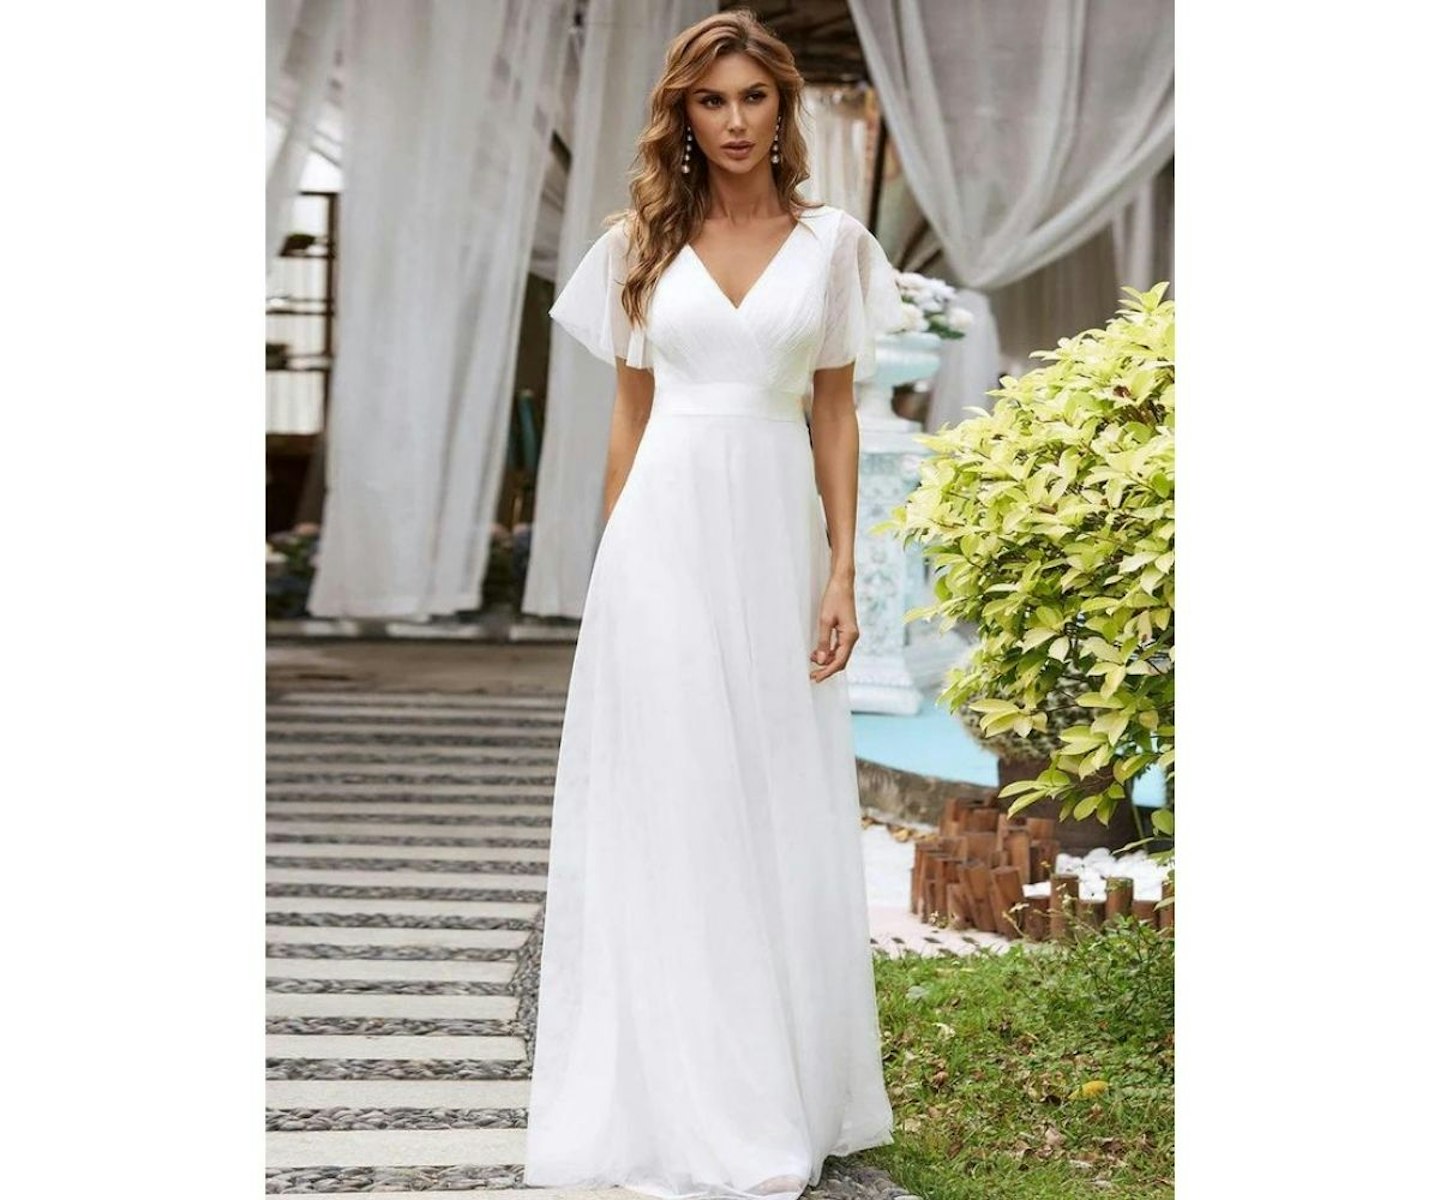 Modest Wedding Dress ANNIE Minimal Wedding Dress Simple Short Sleeves  Wedding Dress Satin Wedding Dress A-line Silhouette Elopement Dress 